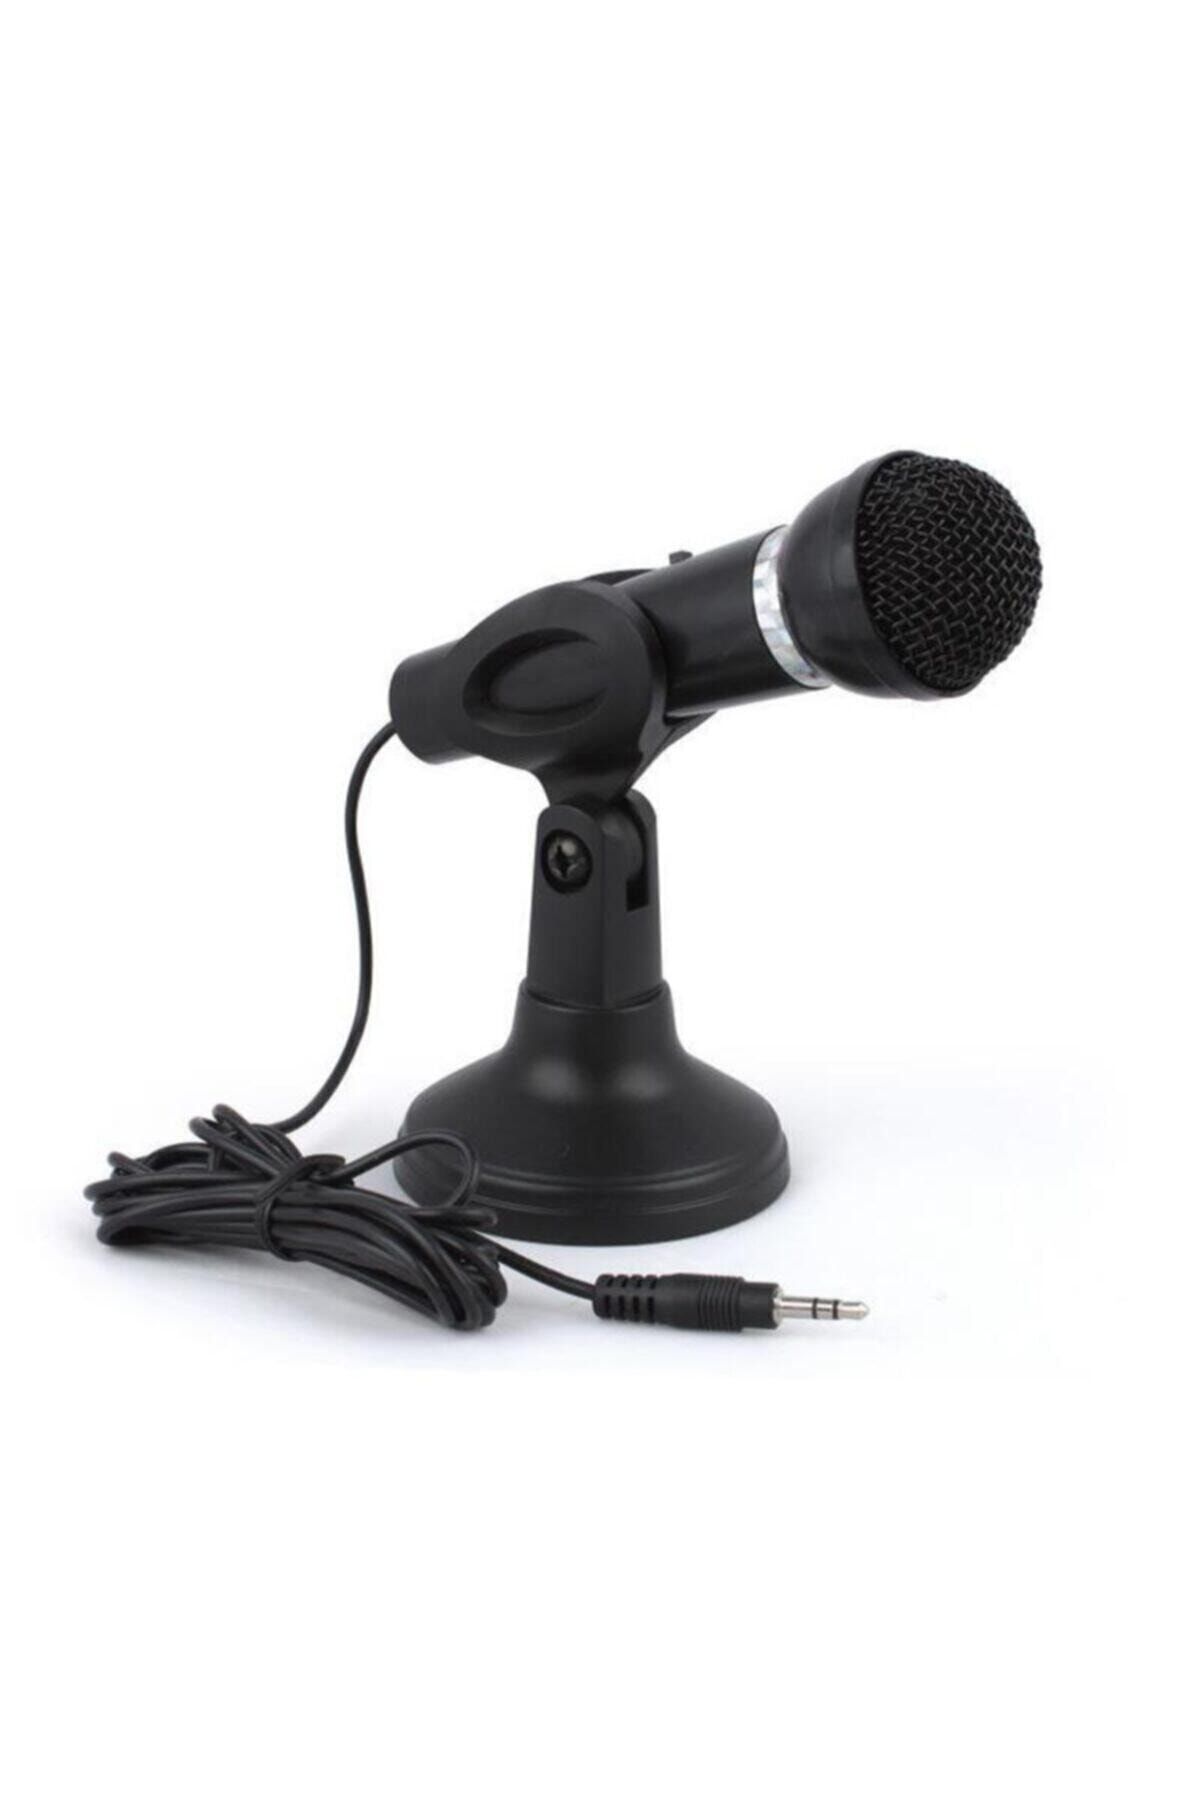 Powermaster Unico Masaüstü Bilgisayar Kürsü Mikrofon Siyah Renk Kablolu Mikrofon